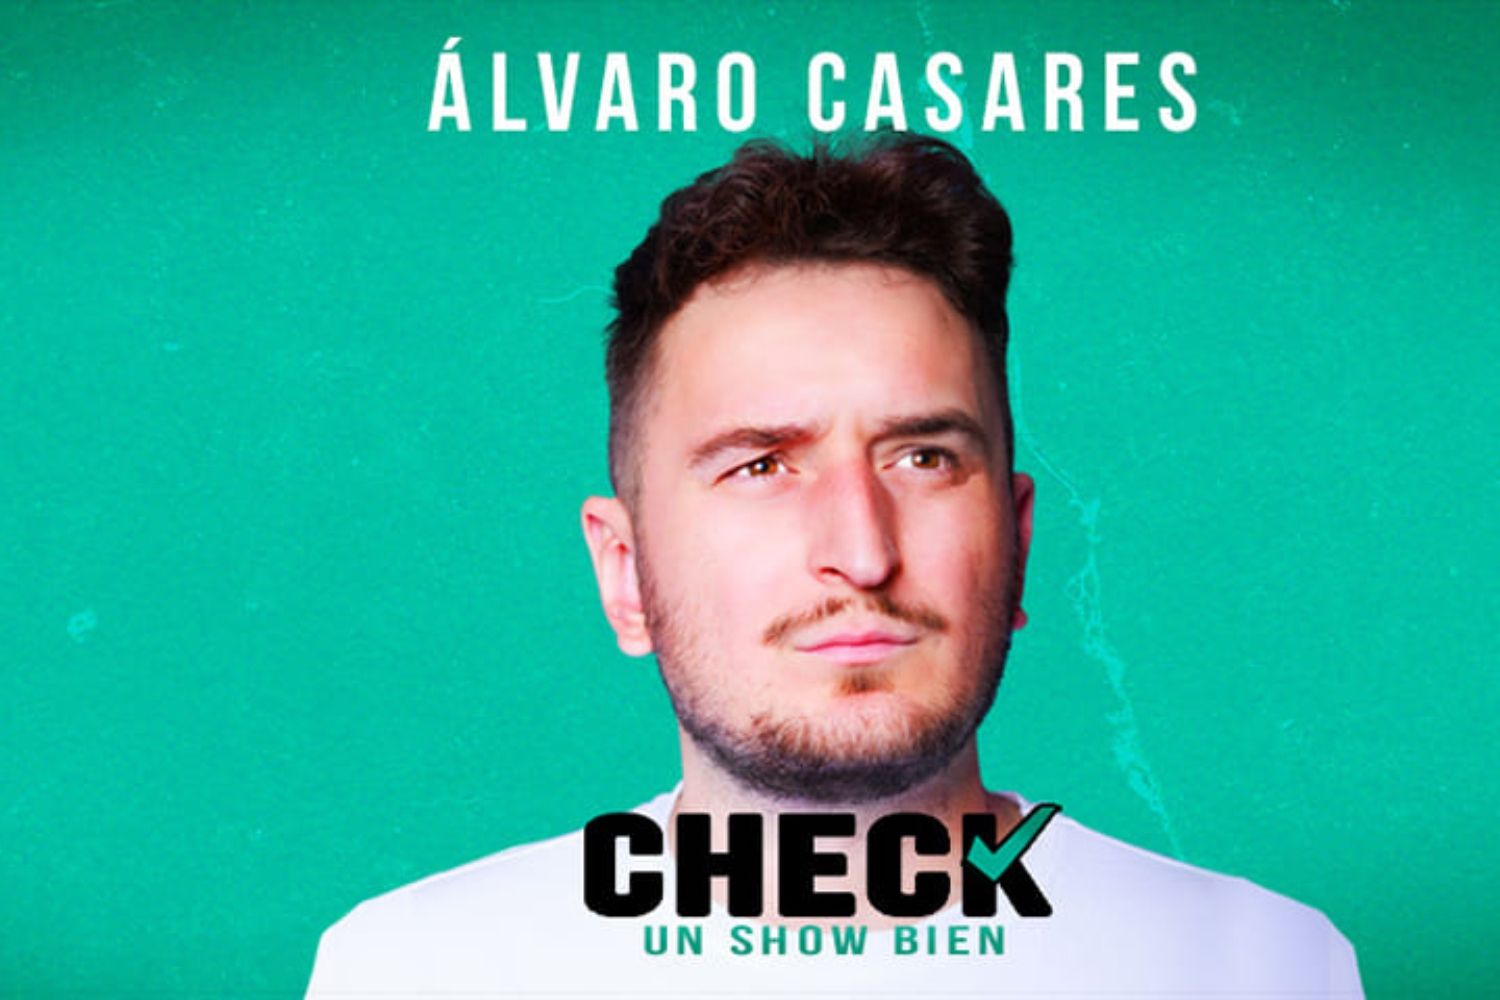 Álvaro Casares trae su show "Check Un show de bien" al Teatro San Francisco de León